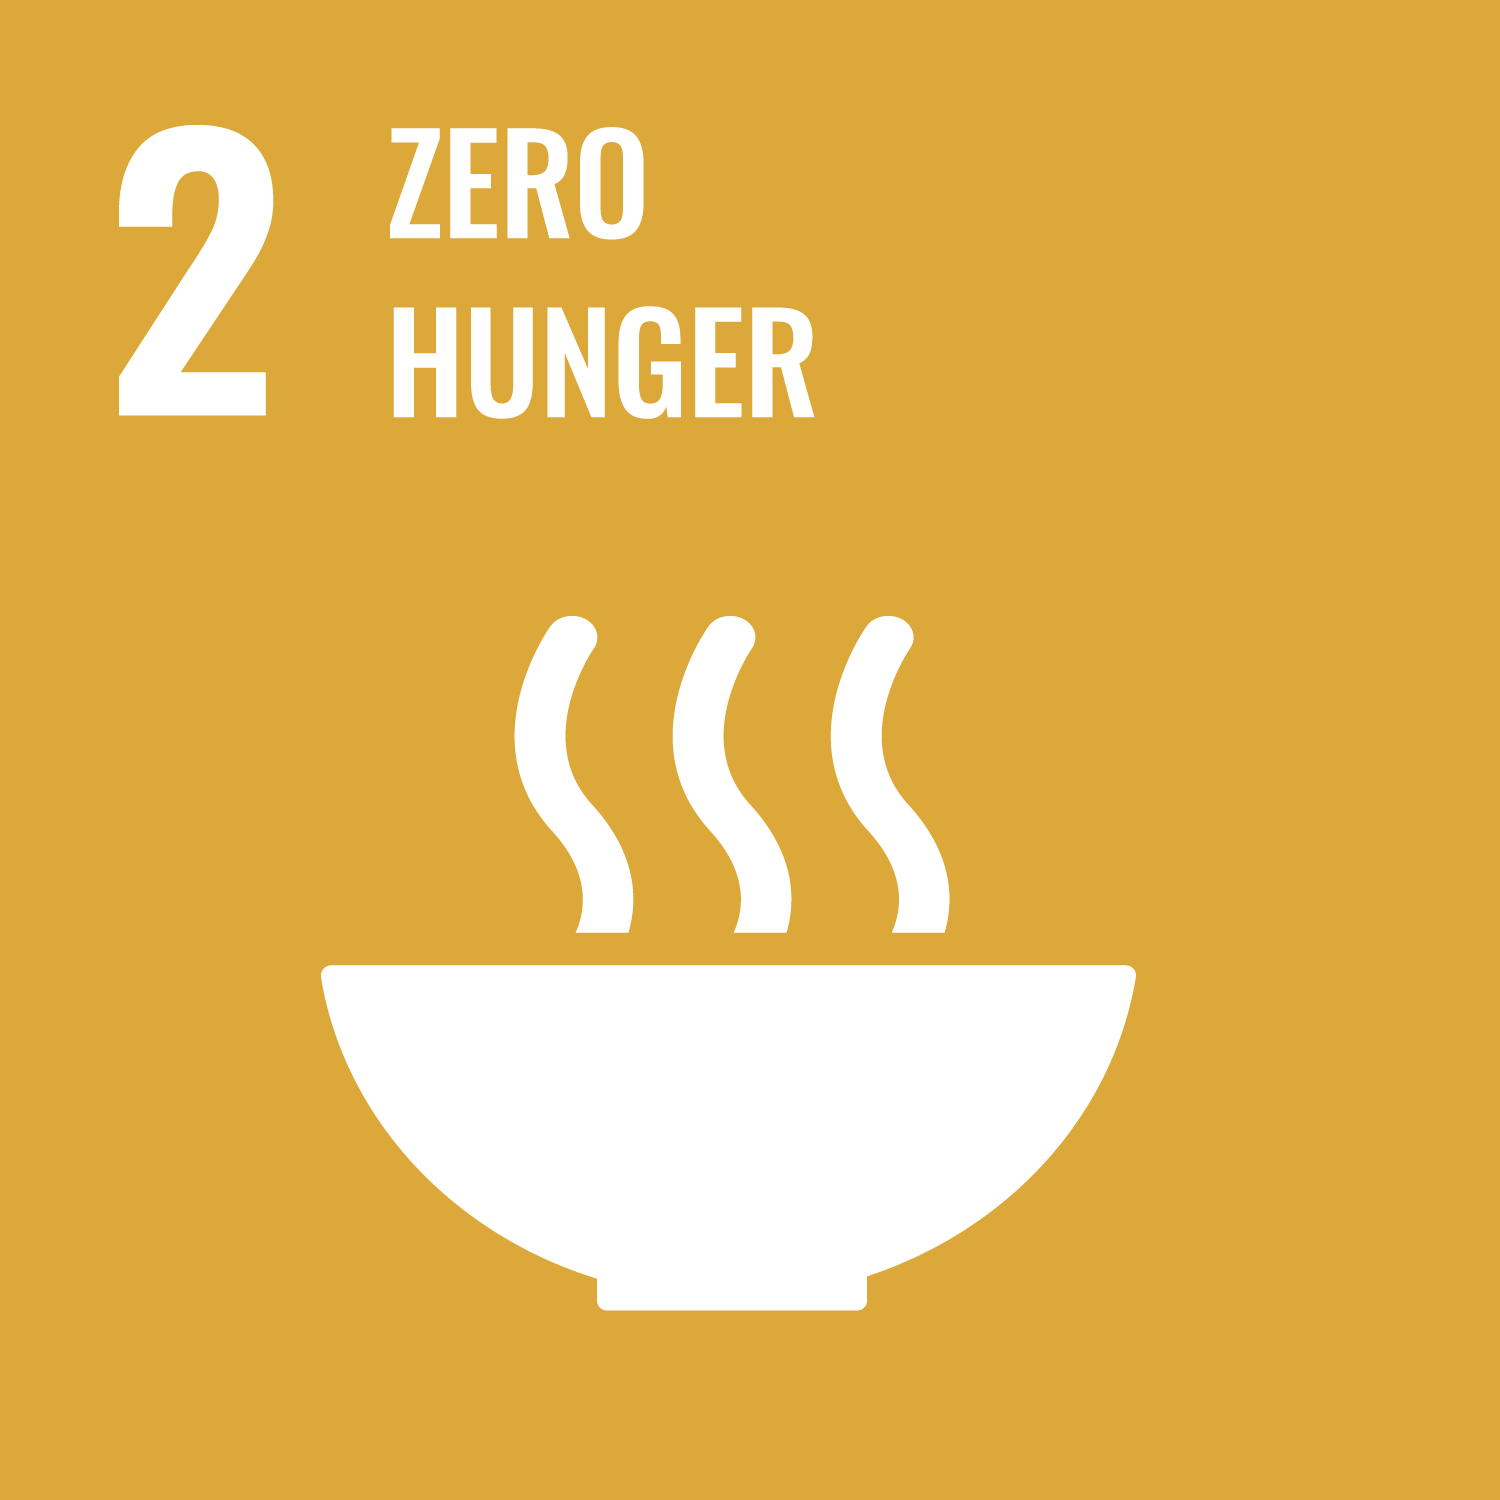 SDGs Goal 2 Zero Hunger cover image